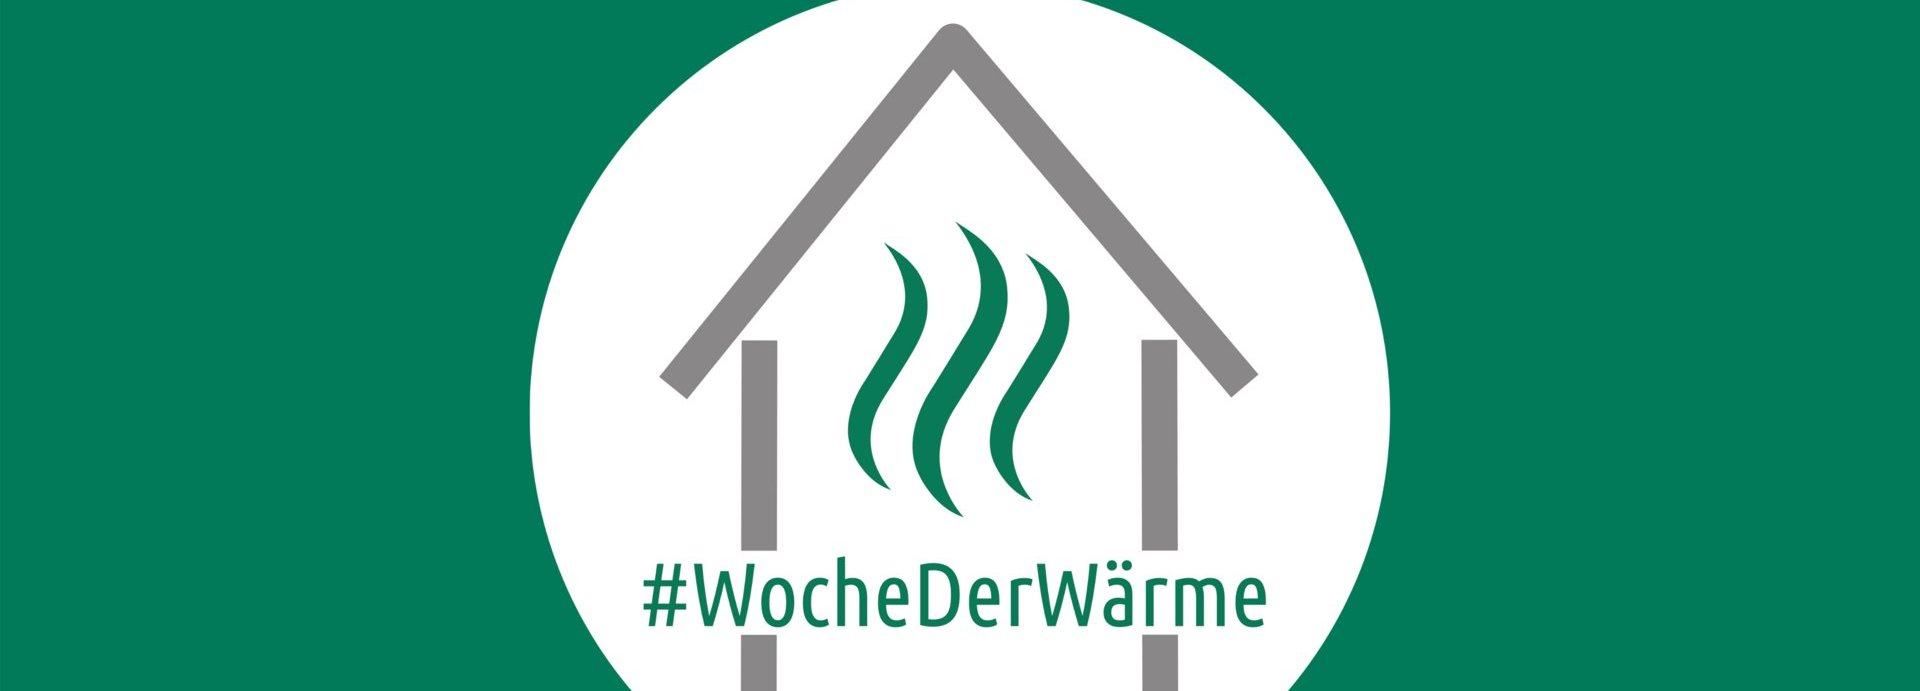 Logo der Wärmewoche mit dem Hashtag #wochederwärme